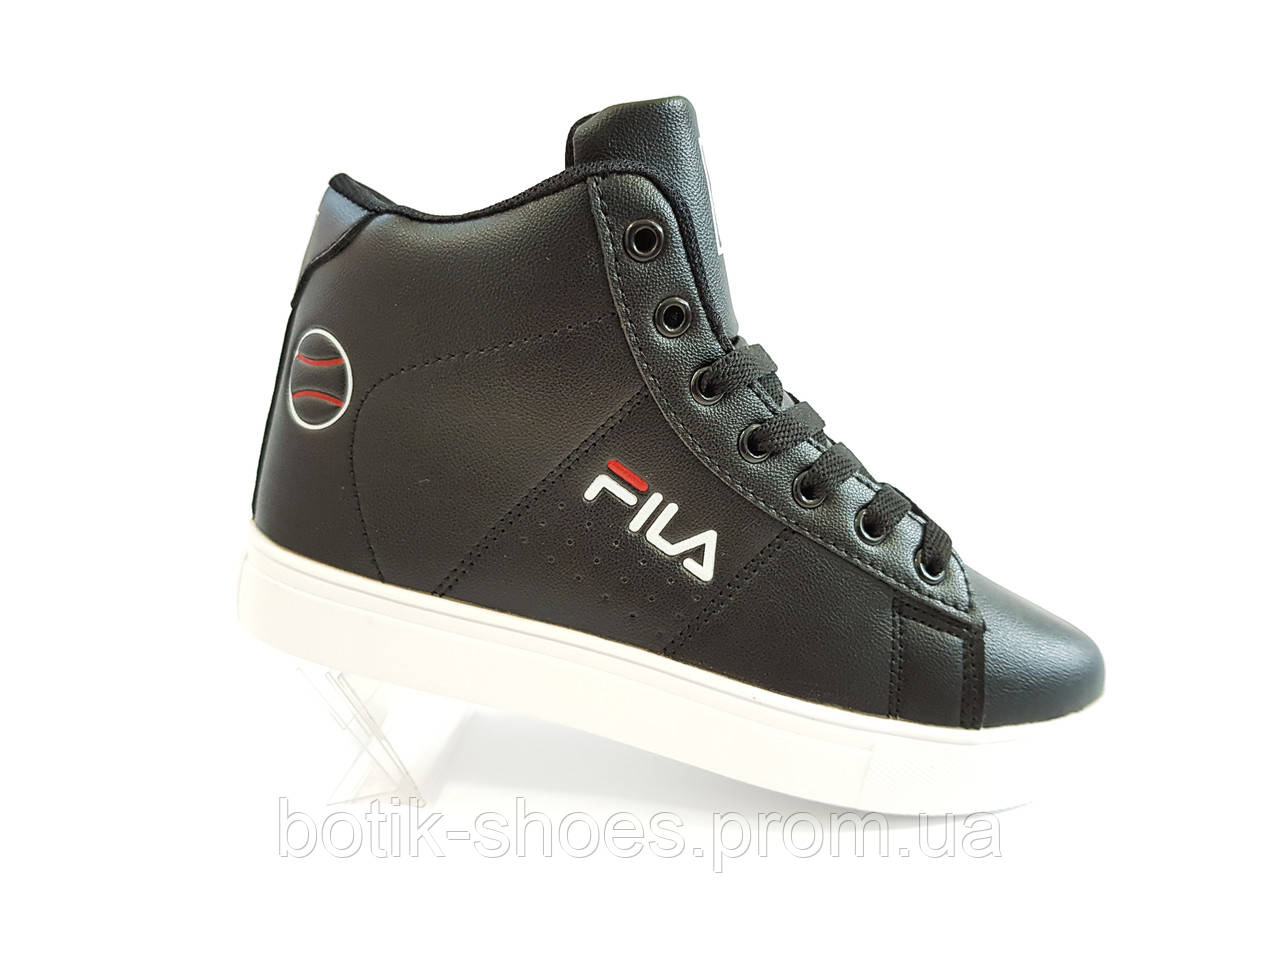 Високі молодіжні стильні кросівки жіночі повсякденні красиві комфортні брендові зручні еко шкіра аналог Fila T-05 чорні 38 розмір